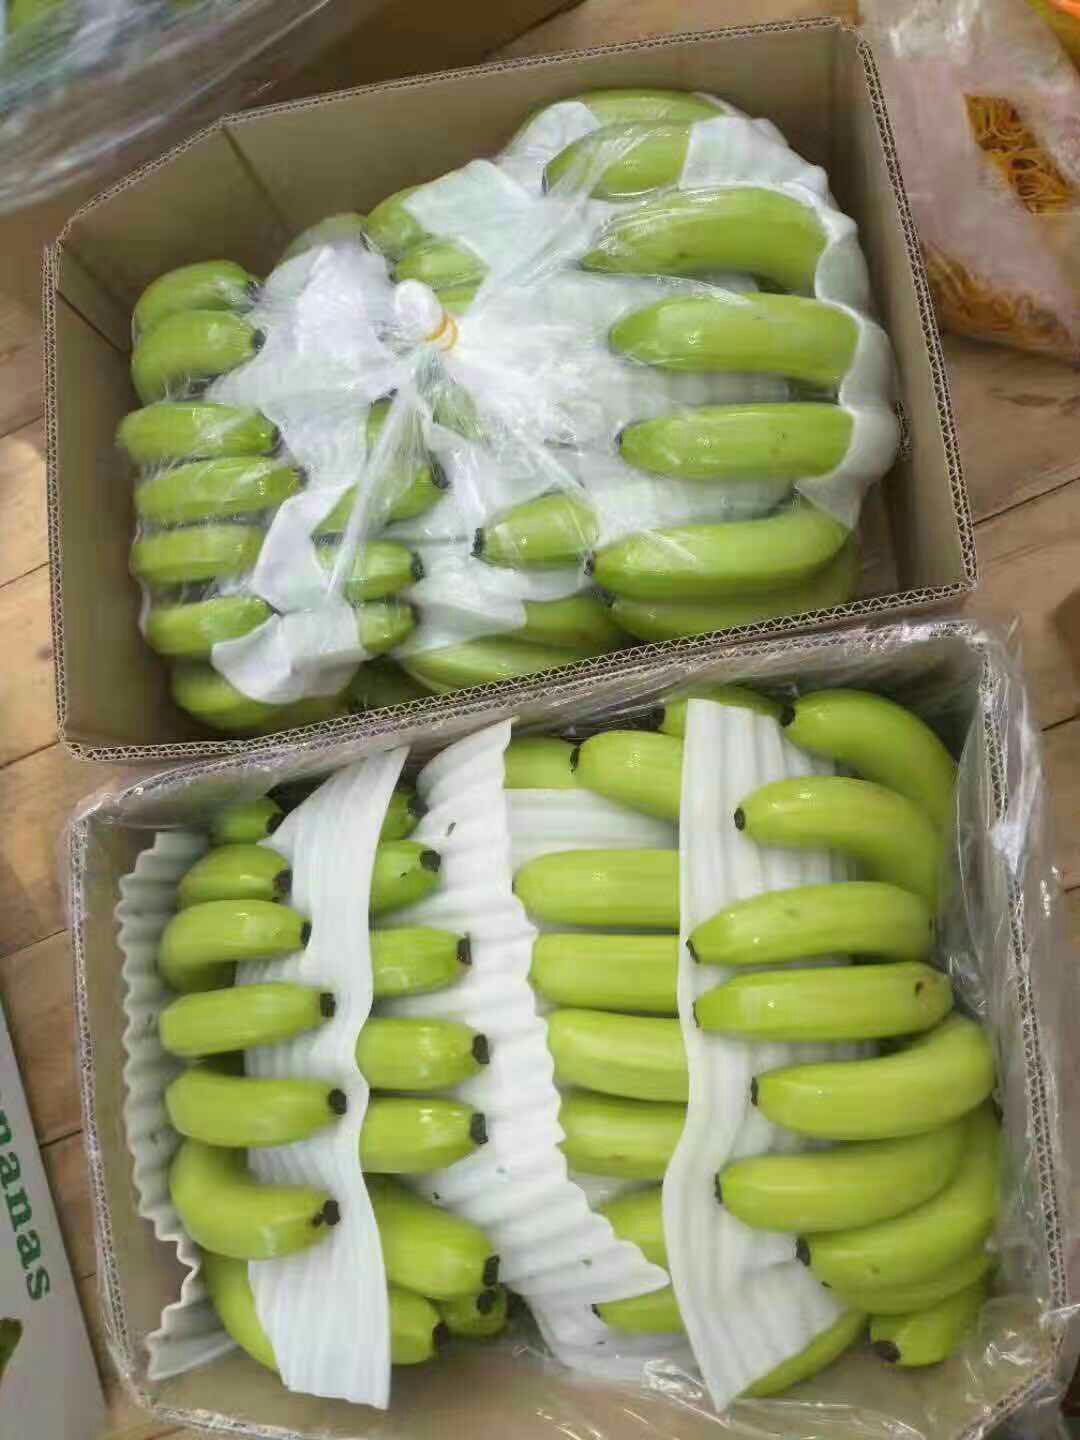 [威廉斯香蕉批发]威廉斯香蕉 七成熟价格2元/斤 